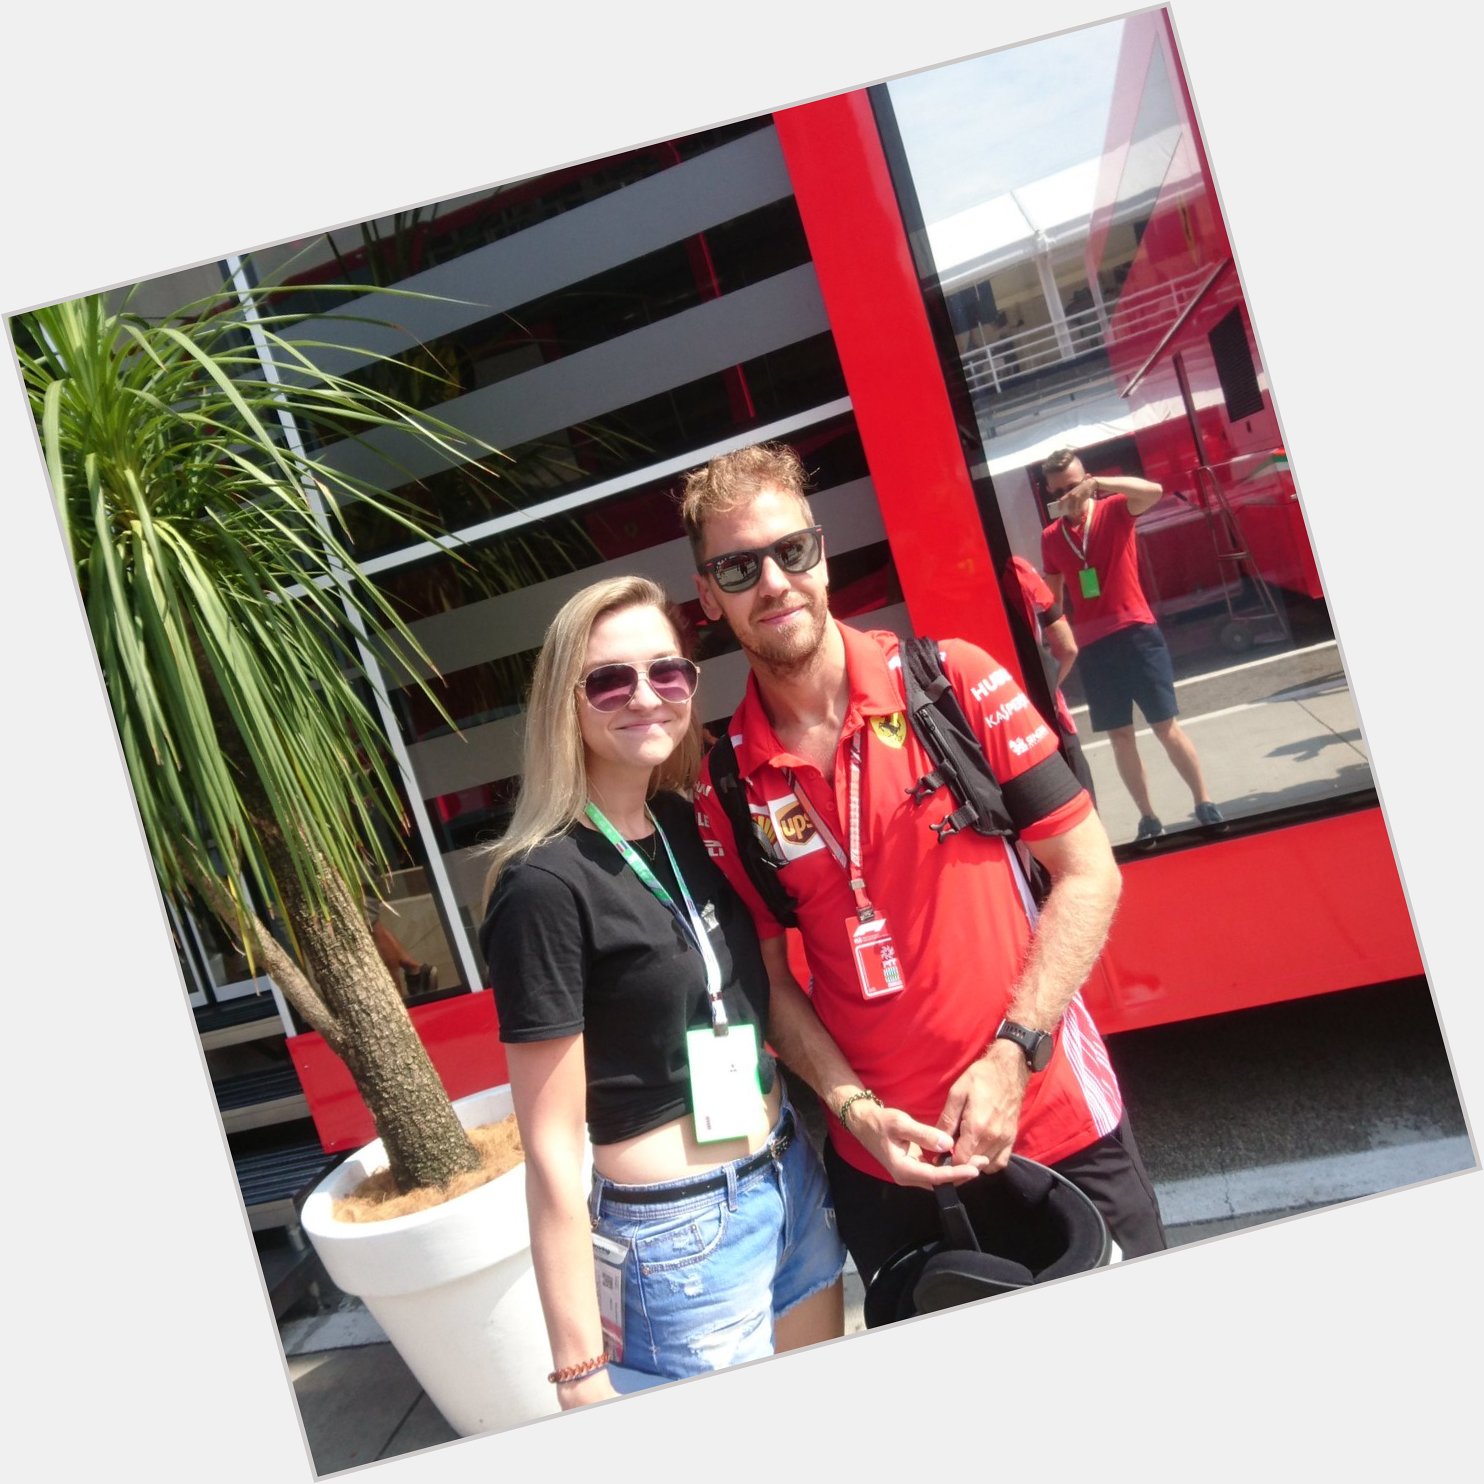 Happy birthday to my biggest life inspiration, Sebastian Vettel  